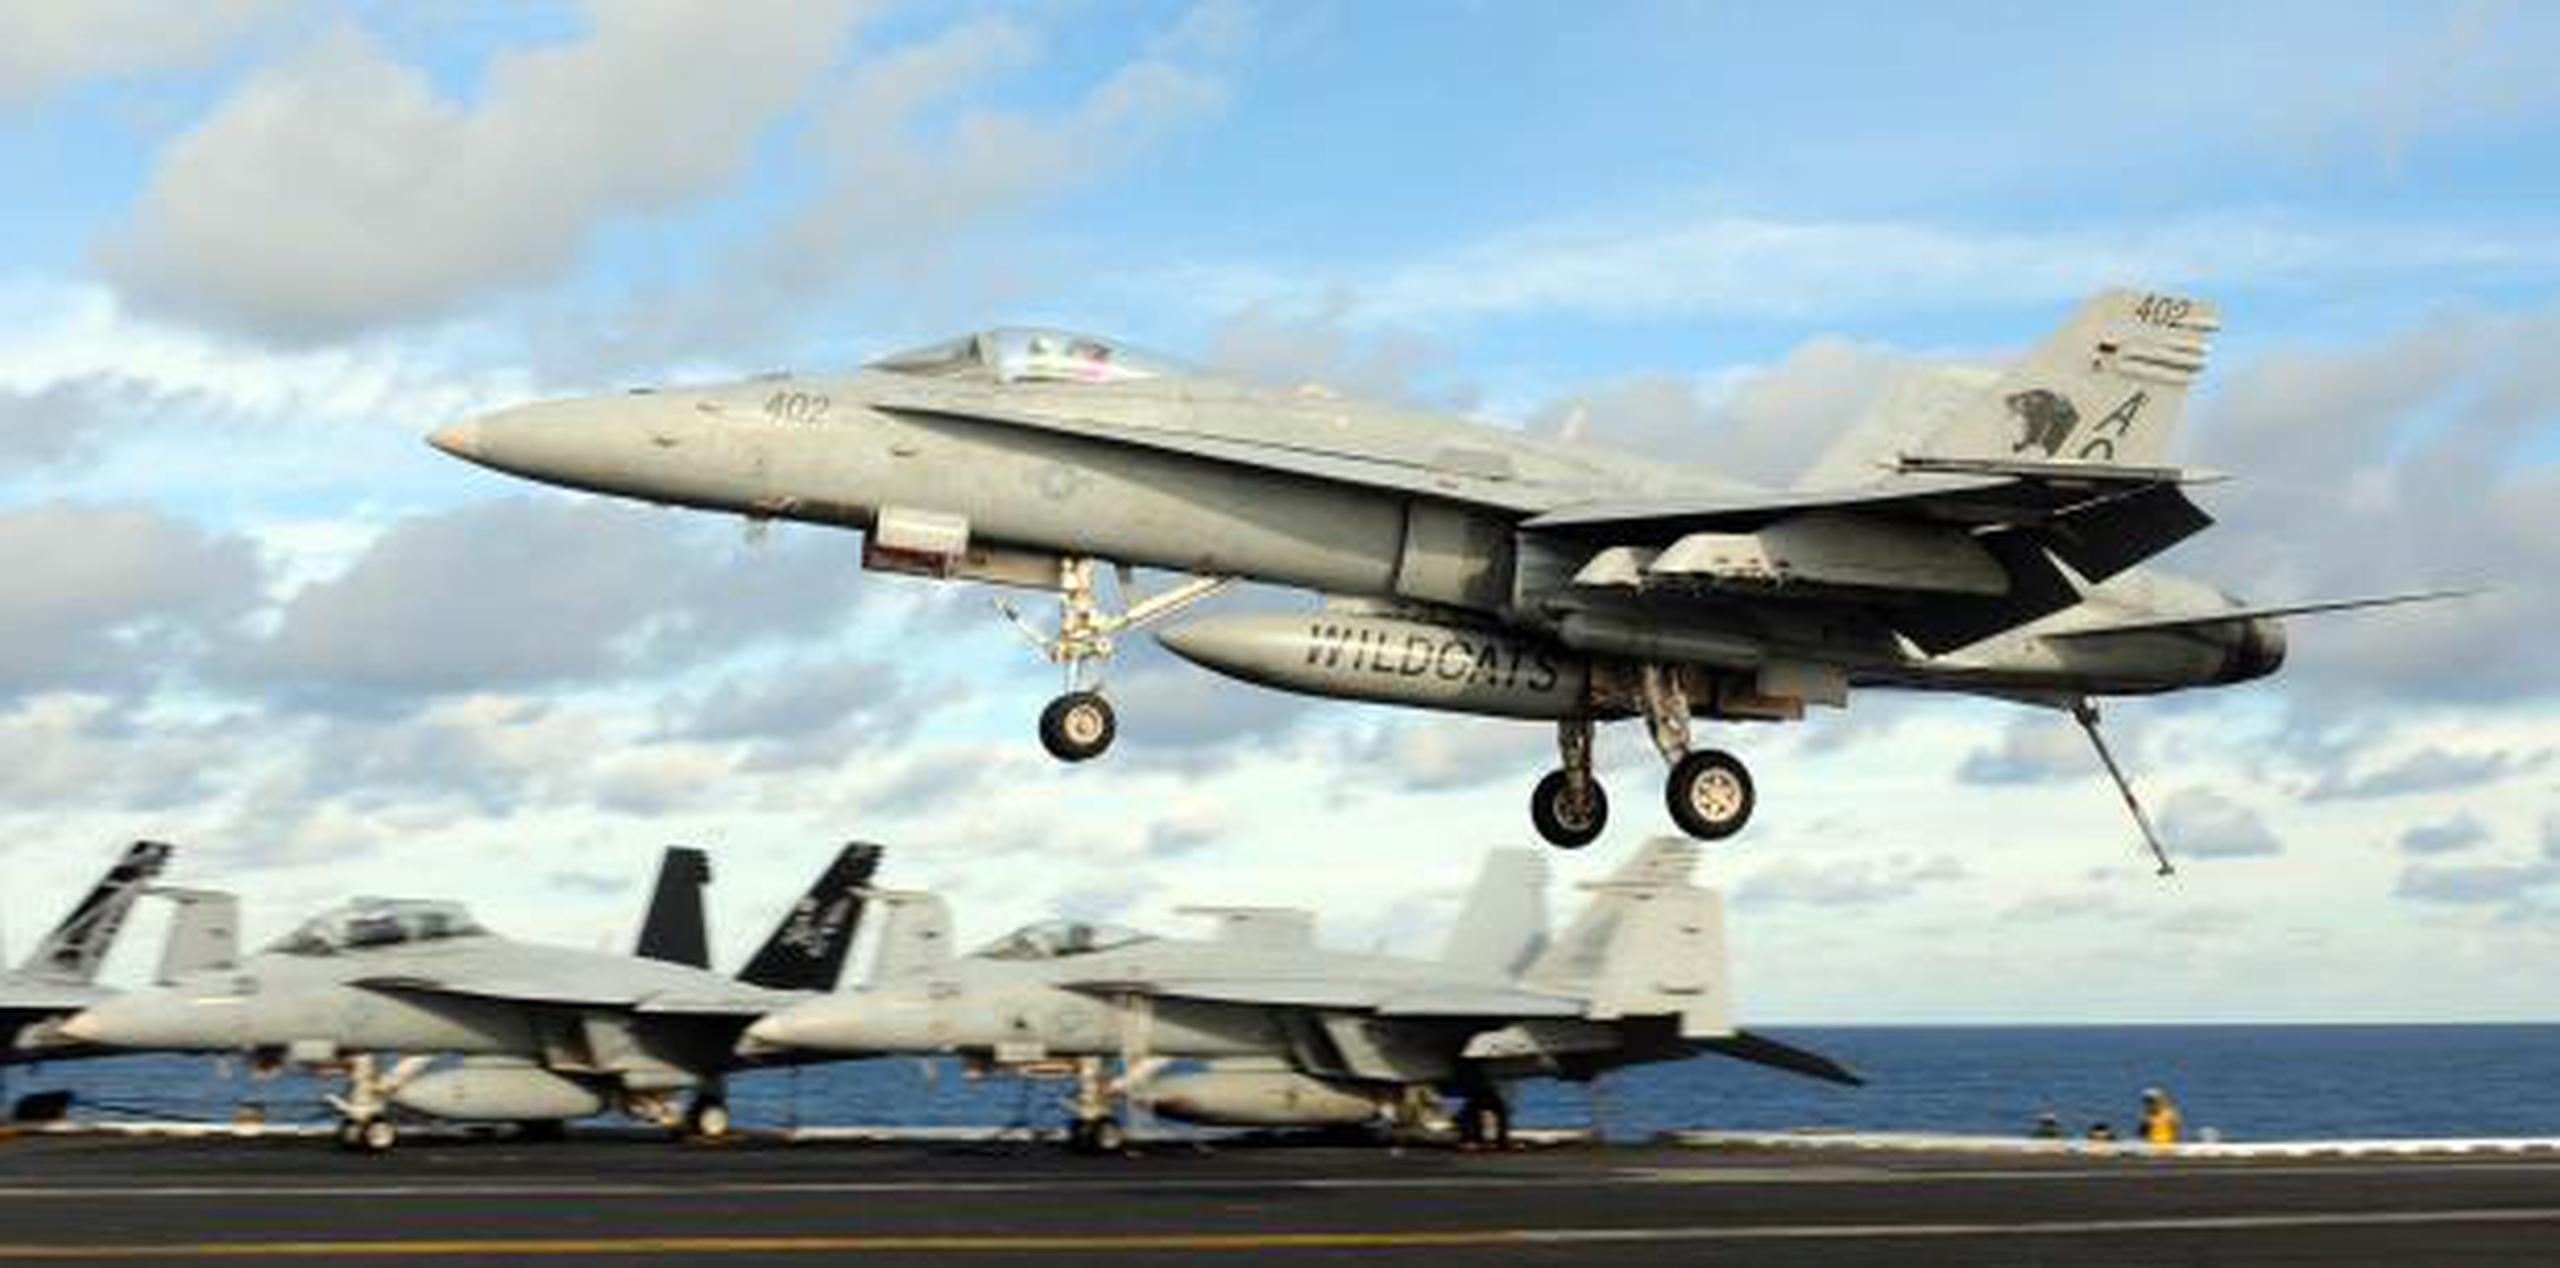 Más de 50,000 militares estadounidenses están apostados en Japón bajo un acuerdo bilateral de seguridad. (U.S. Navy / U.S. Department of Defens)